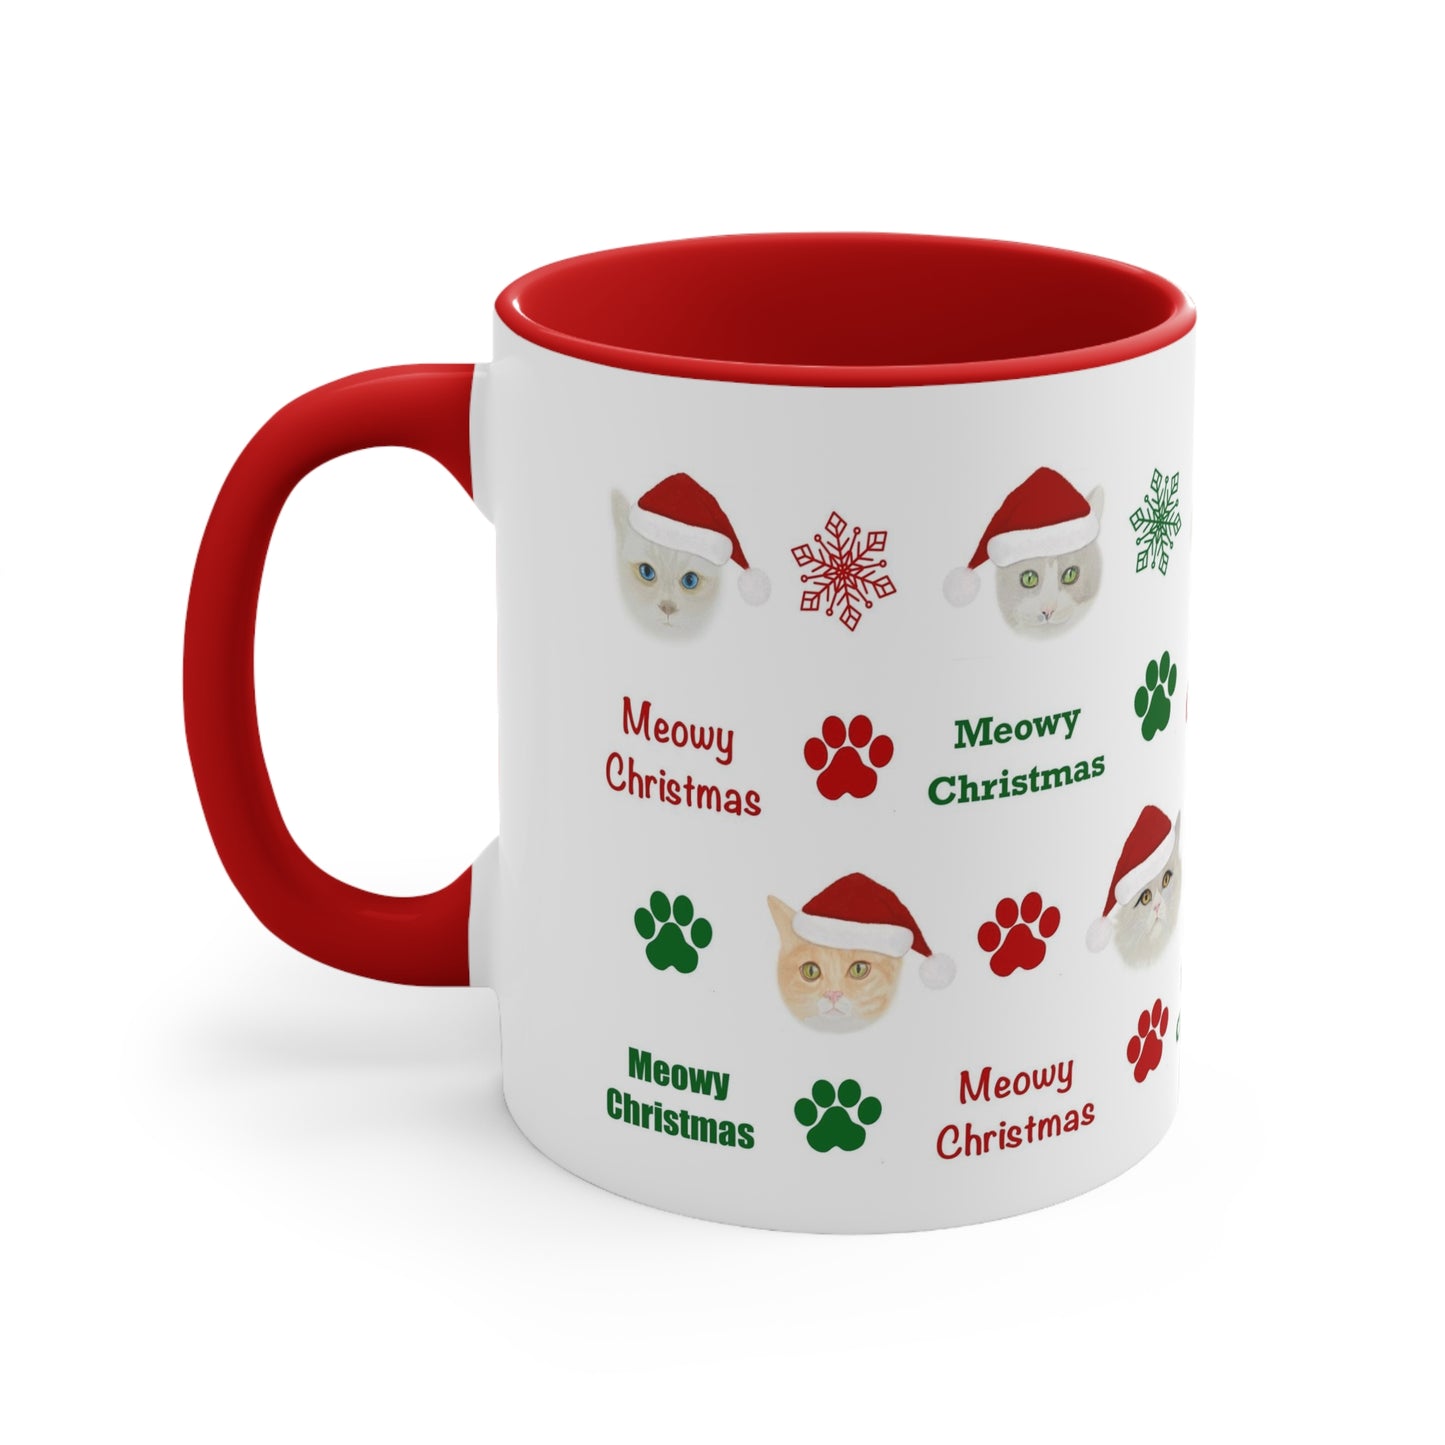 Meowy Christmas Two-tone Coffee Mug, 11oz